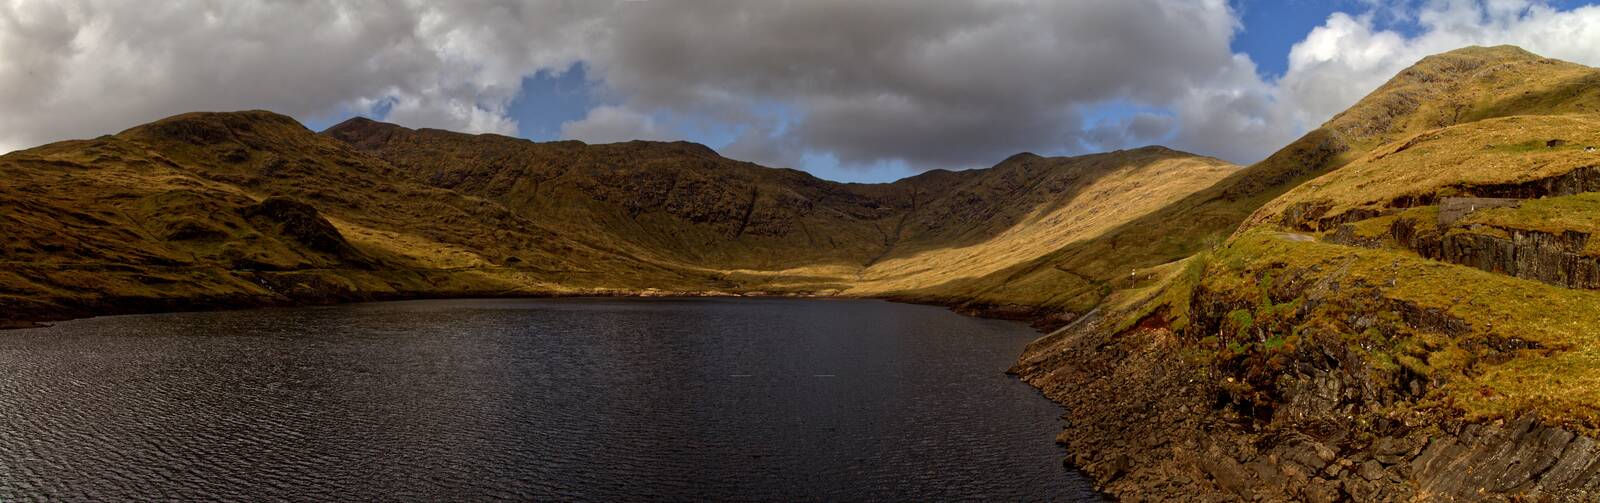 Image of Cruachan Reservoir by Steve Lang